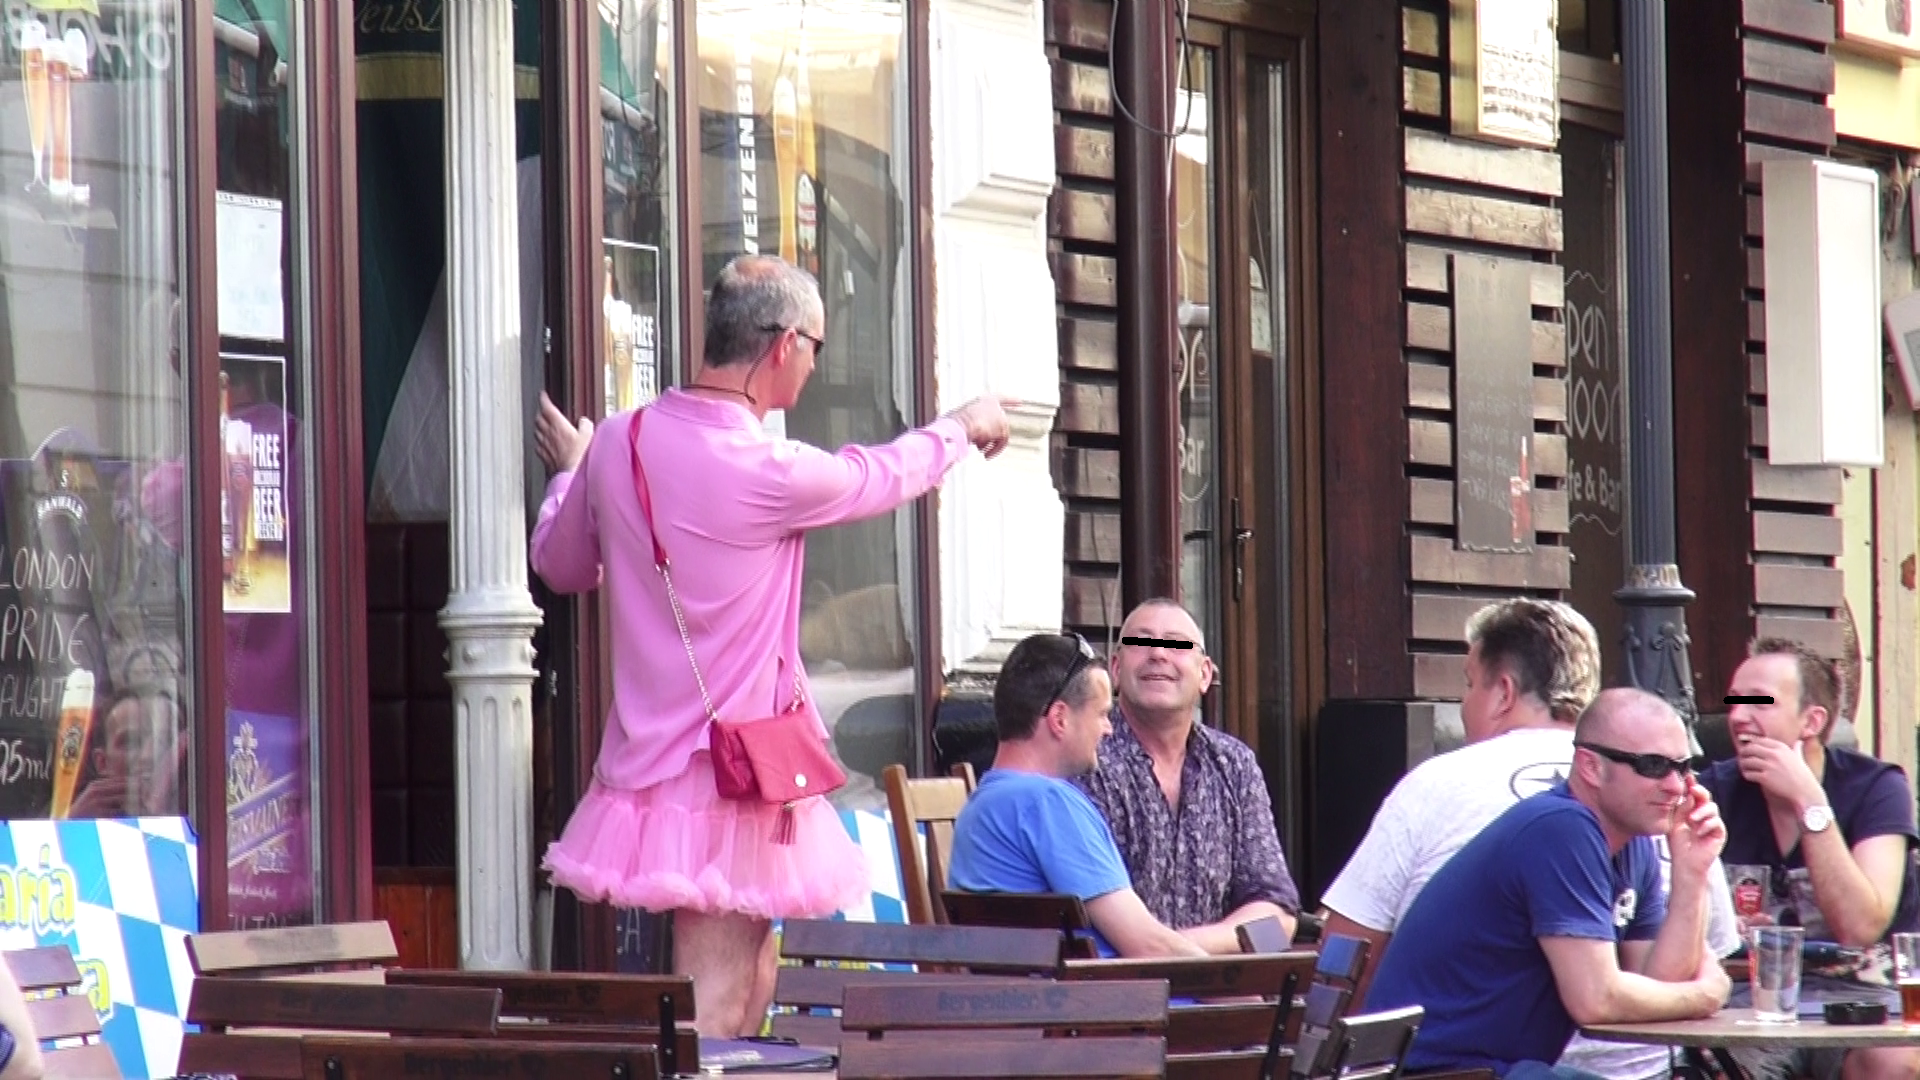 In week-end, englezii au facut senzatie in Centrul Vechi, mai ales Wayne, care a facut parada cu o costumatie roz